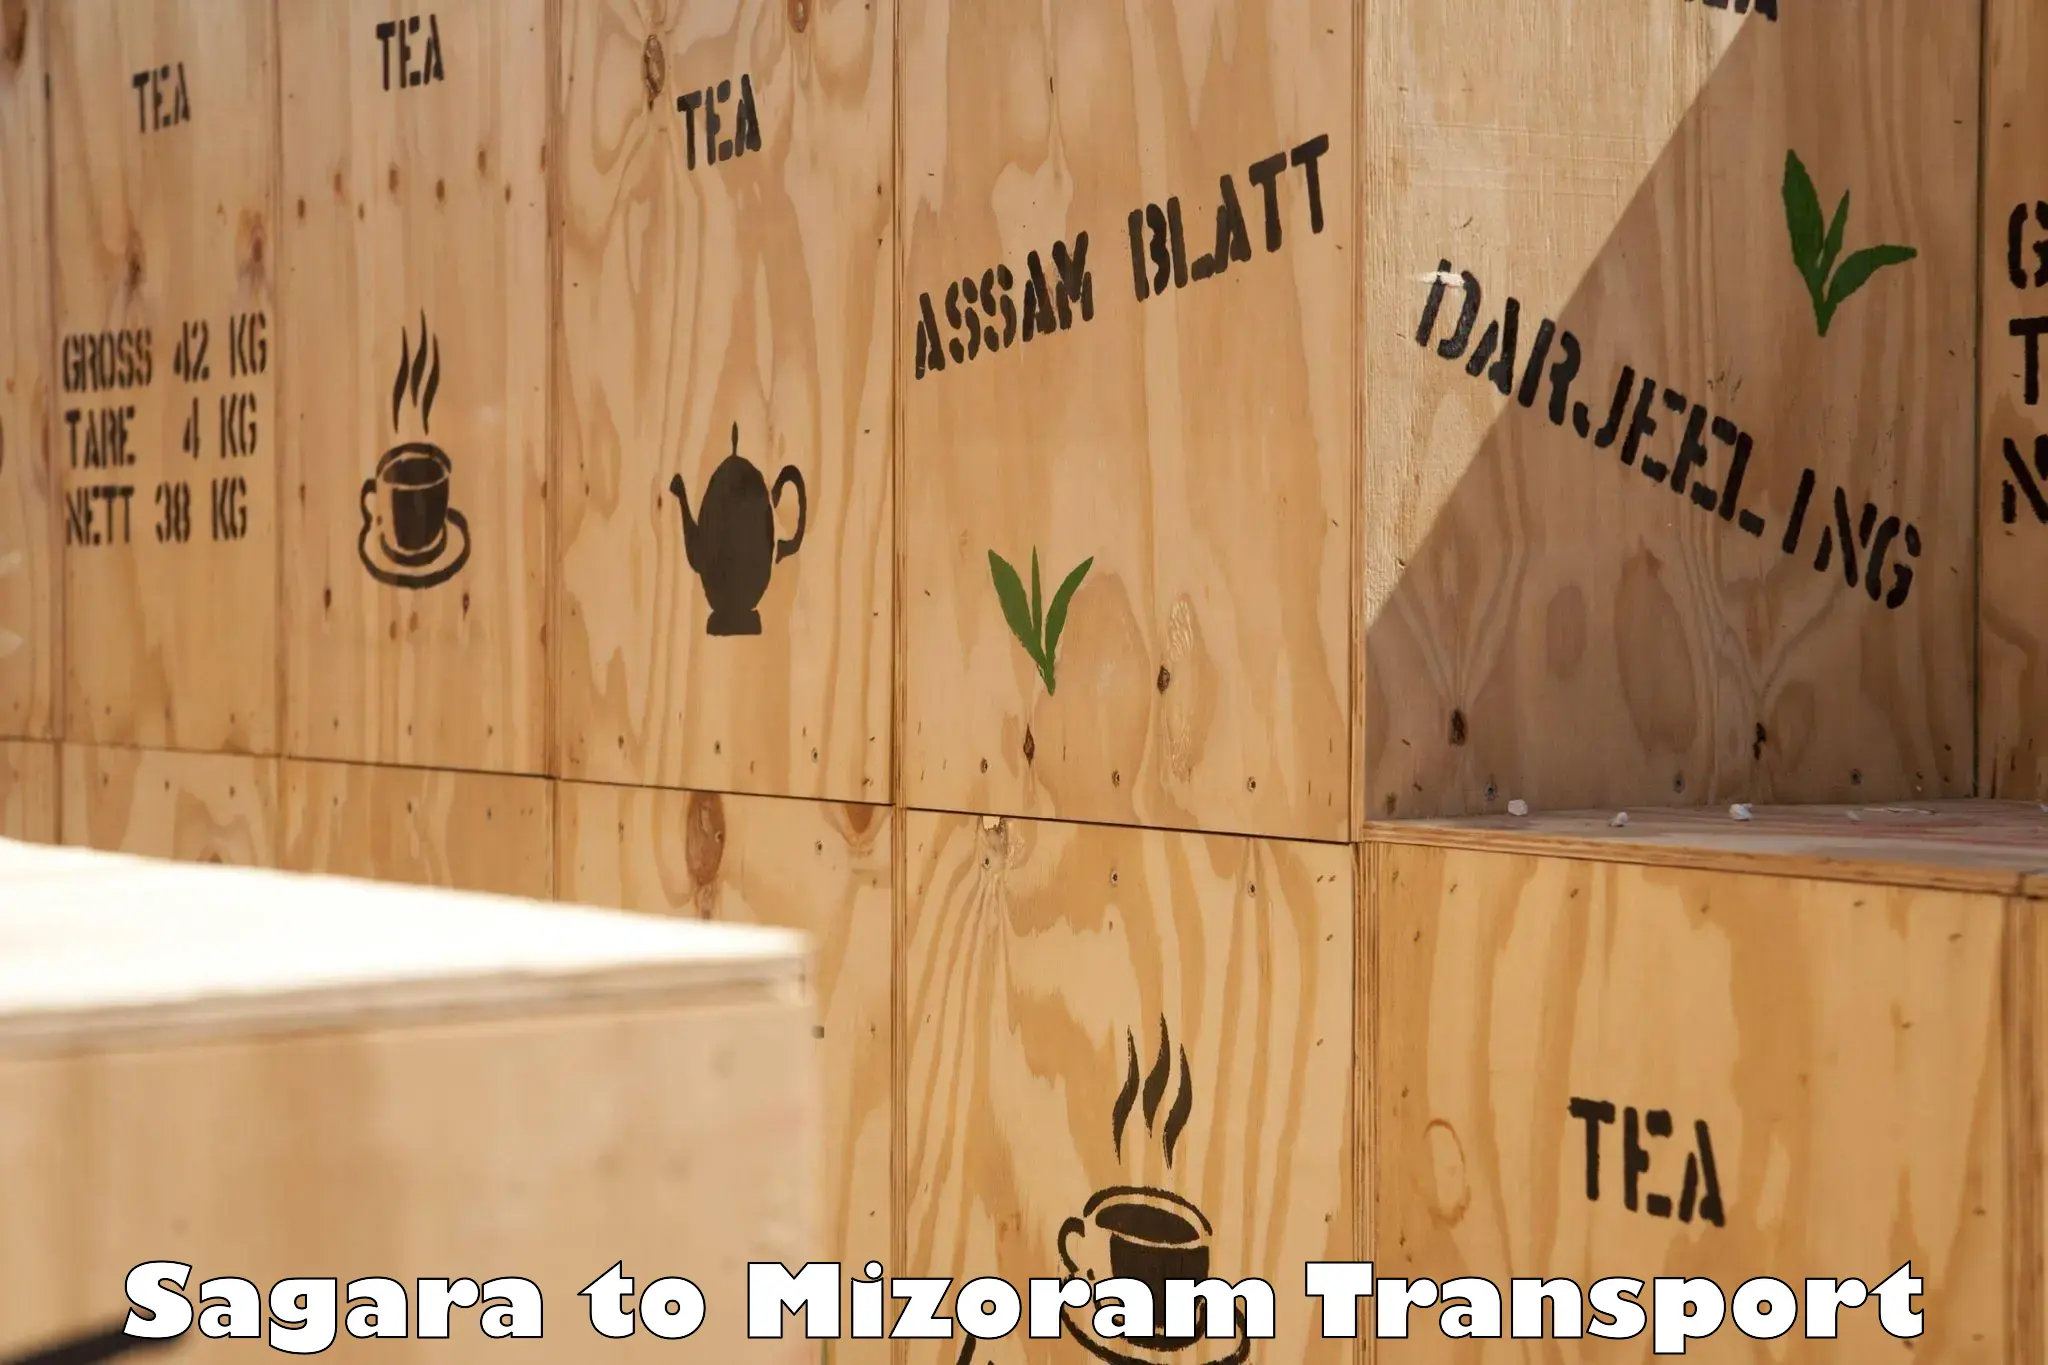 Delivery service Sagara to Mizoram